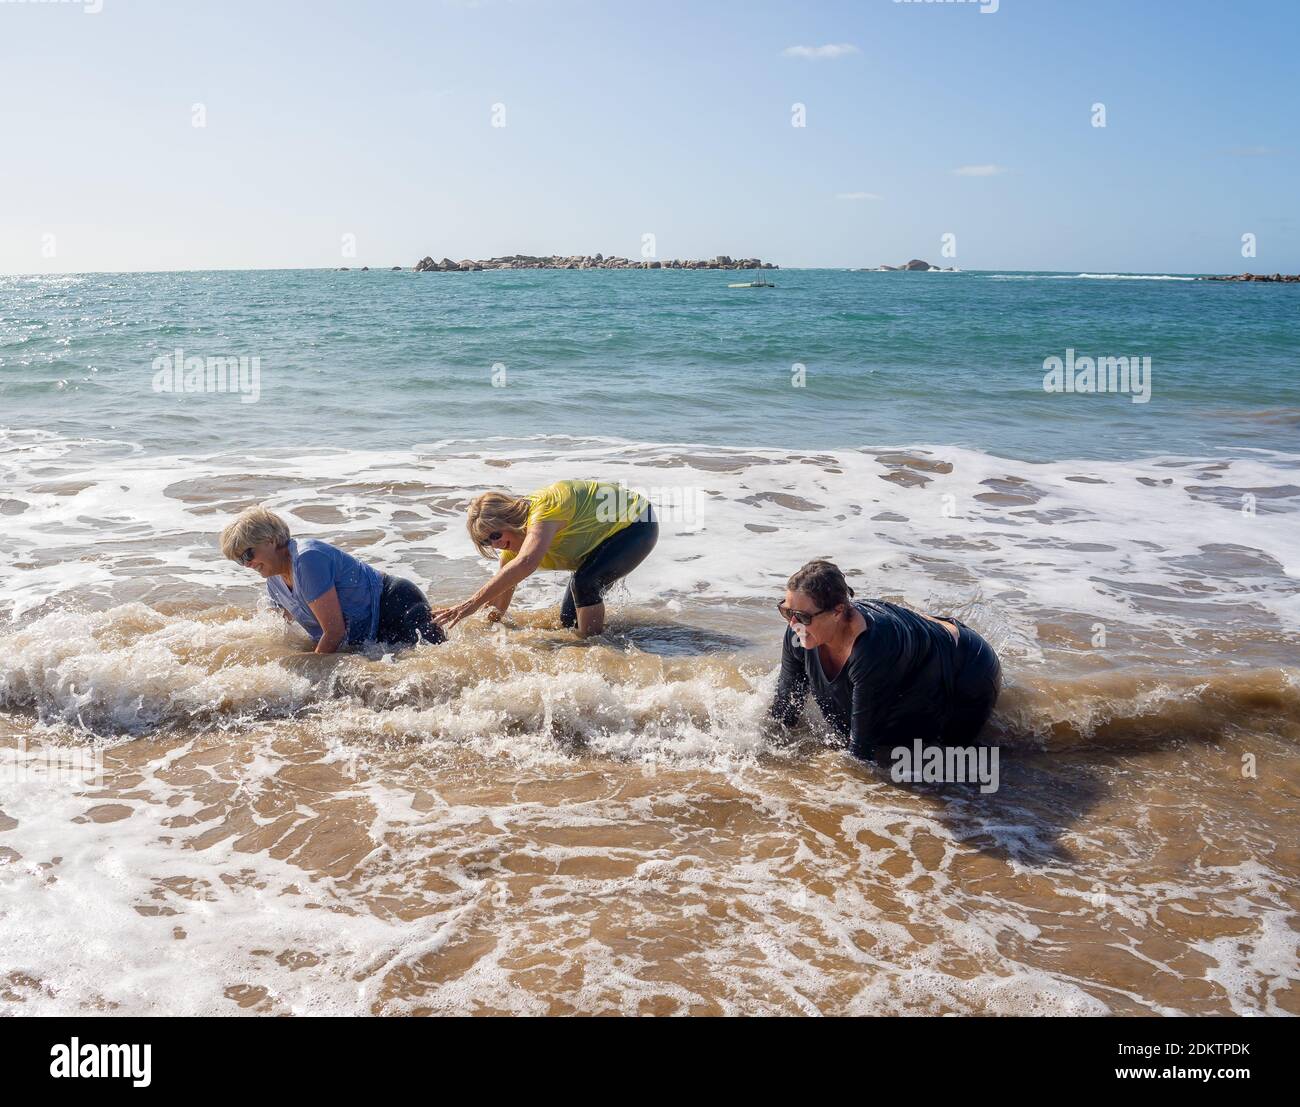 Gruppe von älteren Frauen im Ruhestand in den 60ern und 70ern, die im Wasser fallen und Spaß am Strand haben. Ältere Damen lachen, als sie fallen und verlieren Balan Stockfoto